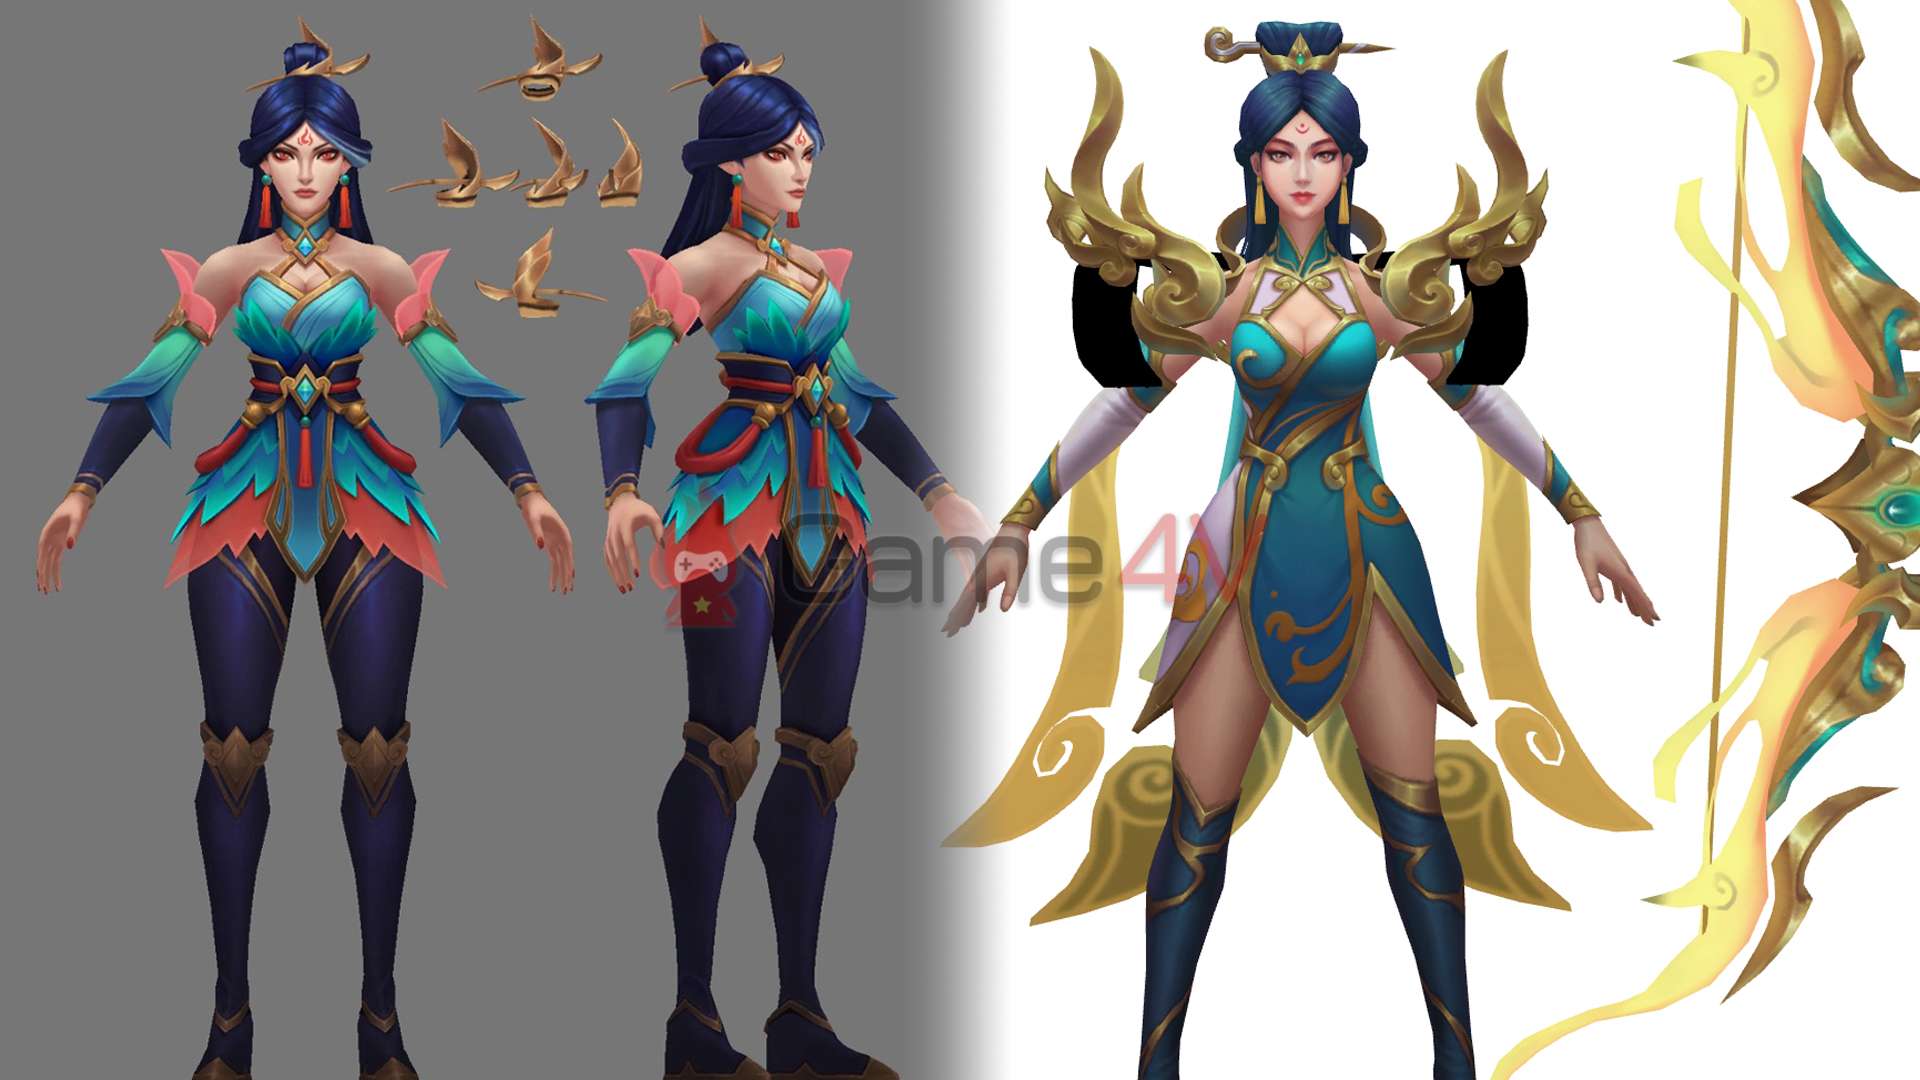 Fan cho rằng 2 trang phục Kayle Tiên Hiệp (bên trái) và Ashe Tân Niên (bên phải) được Riot Games sử dụng cùng 1 model trong game.